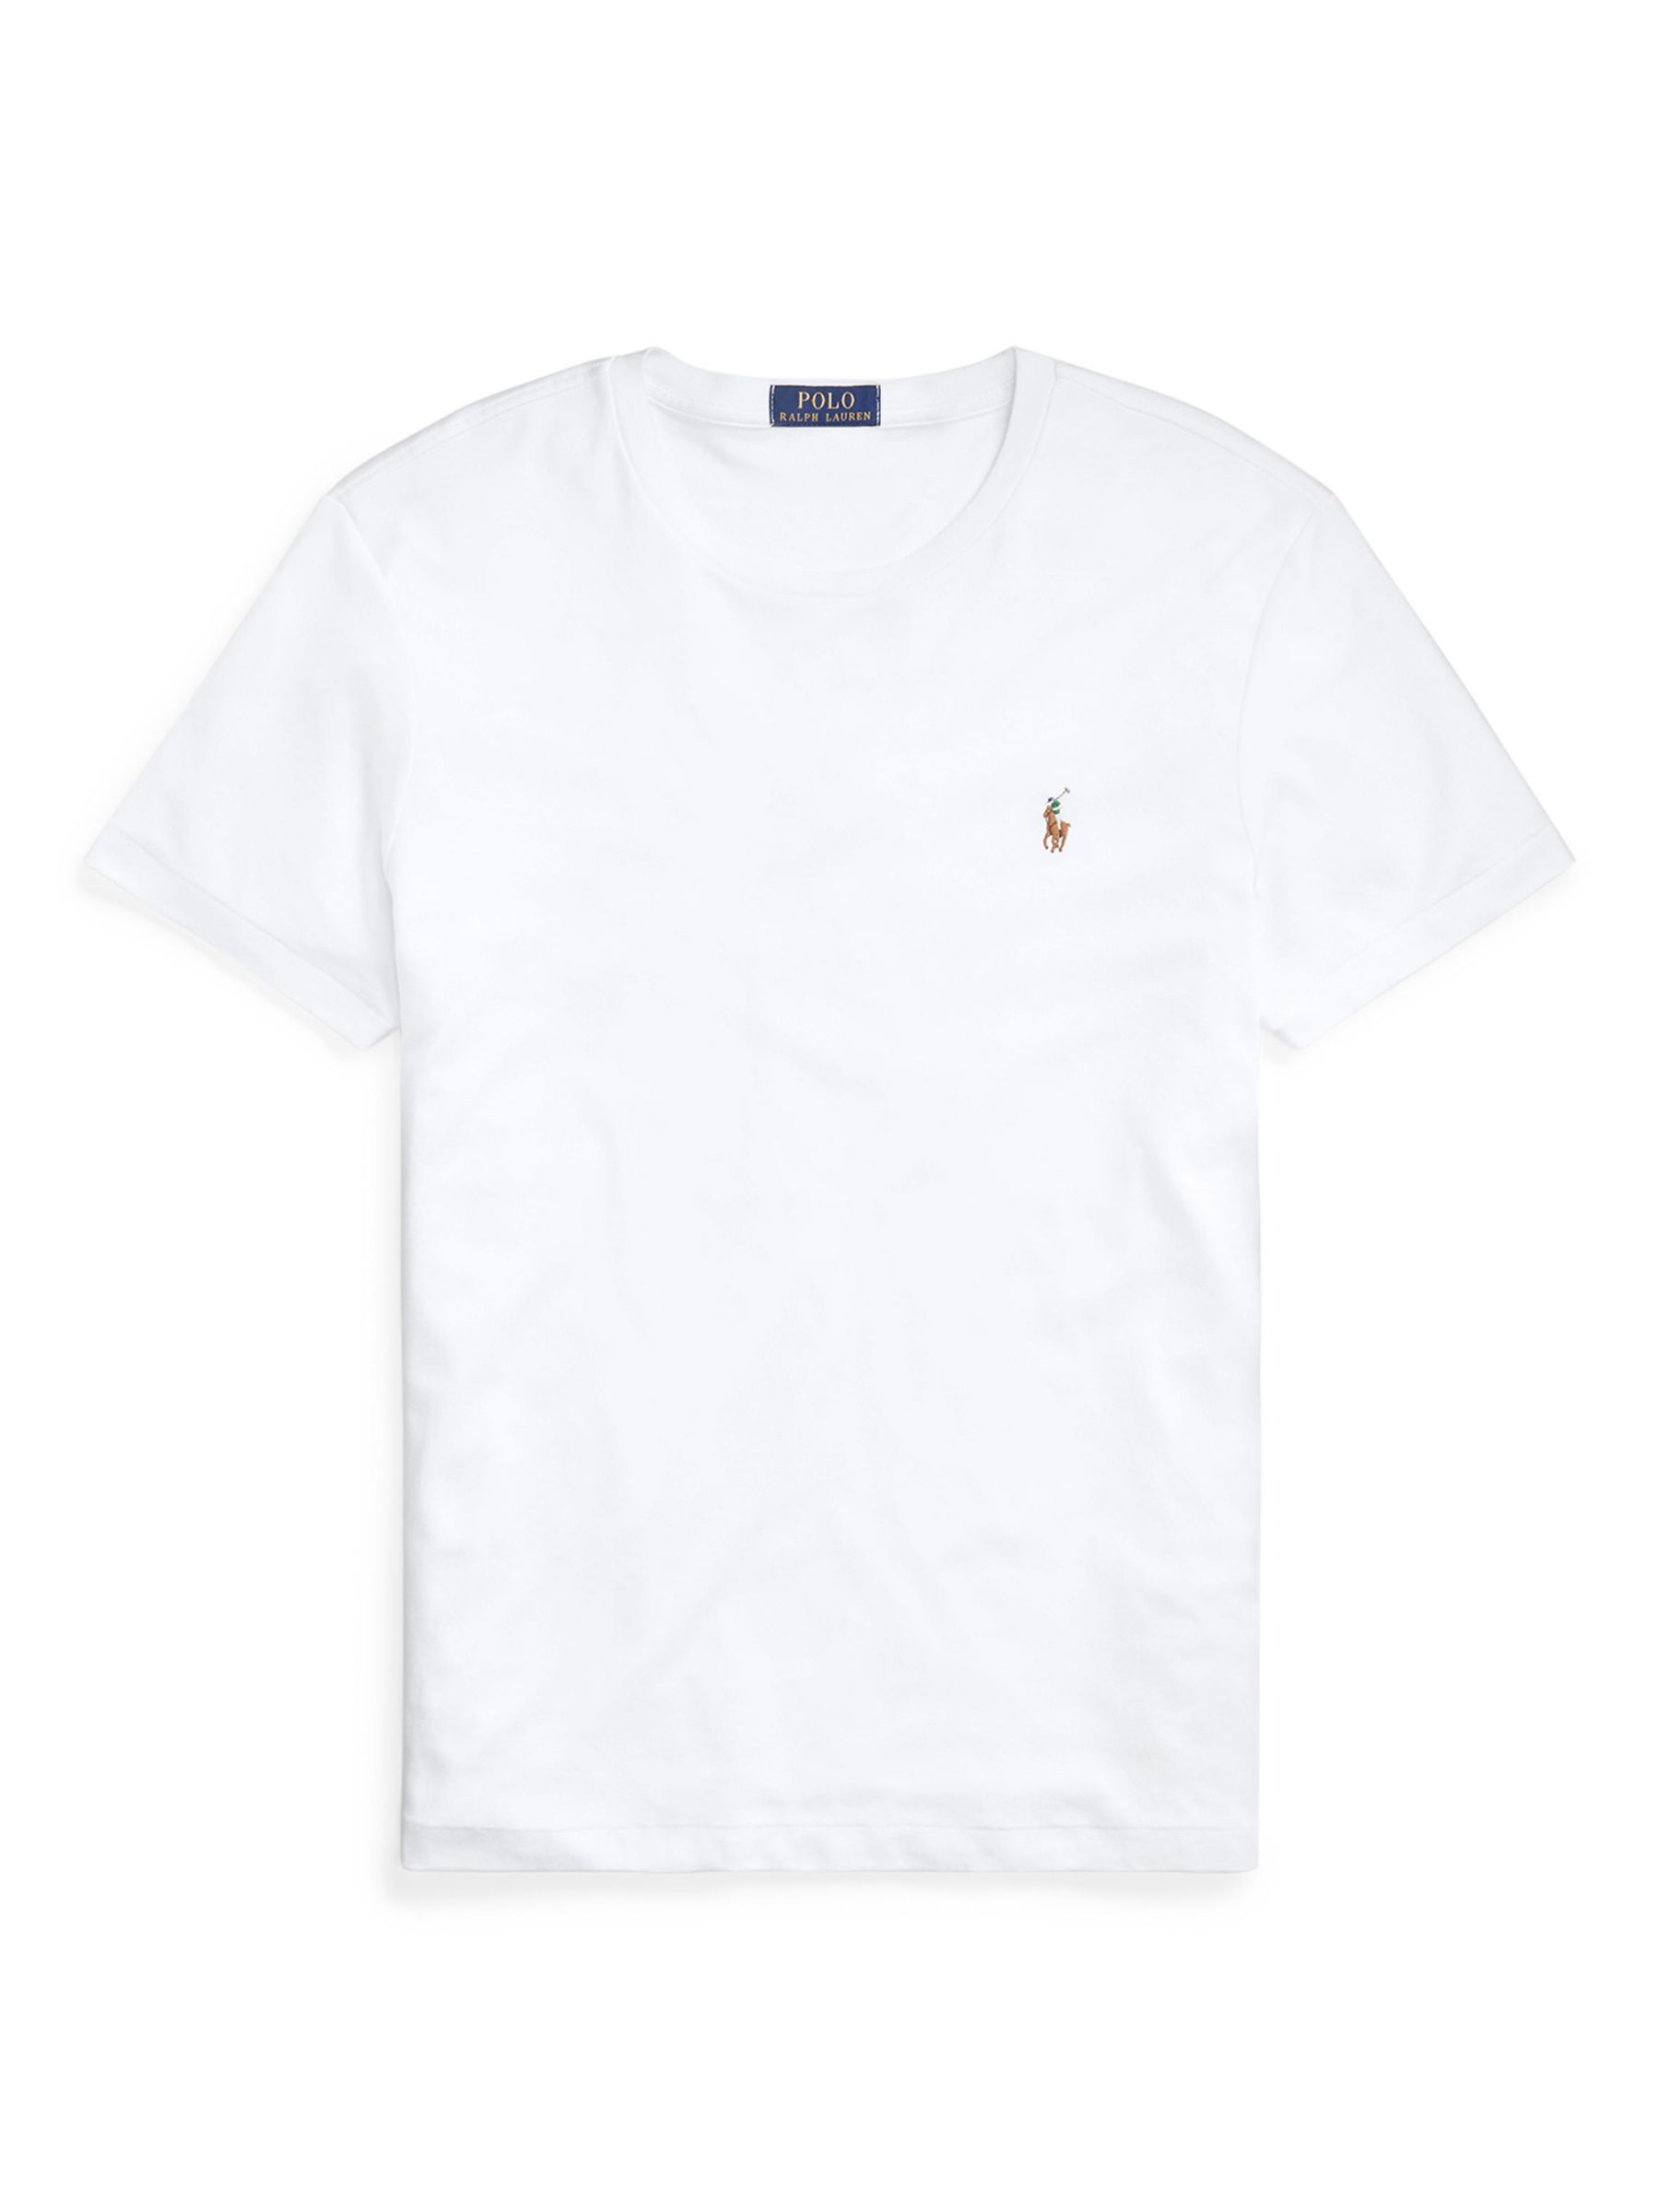 Ralph Lauren Ultra Smooth T-Shirt, White, S